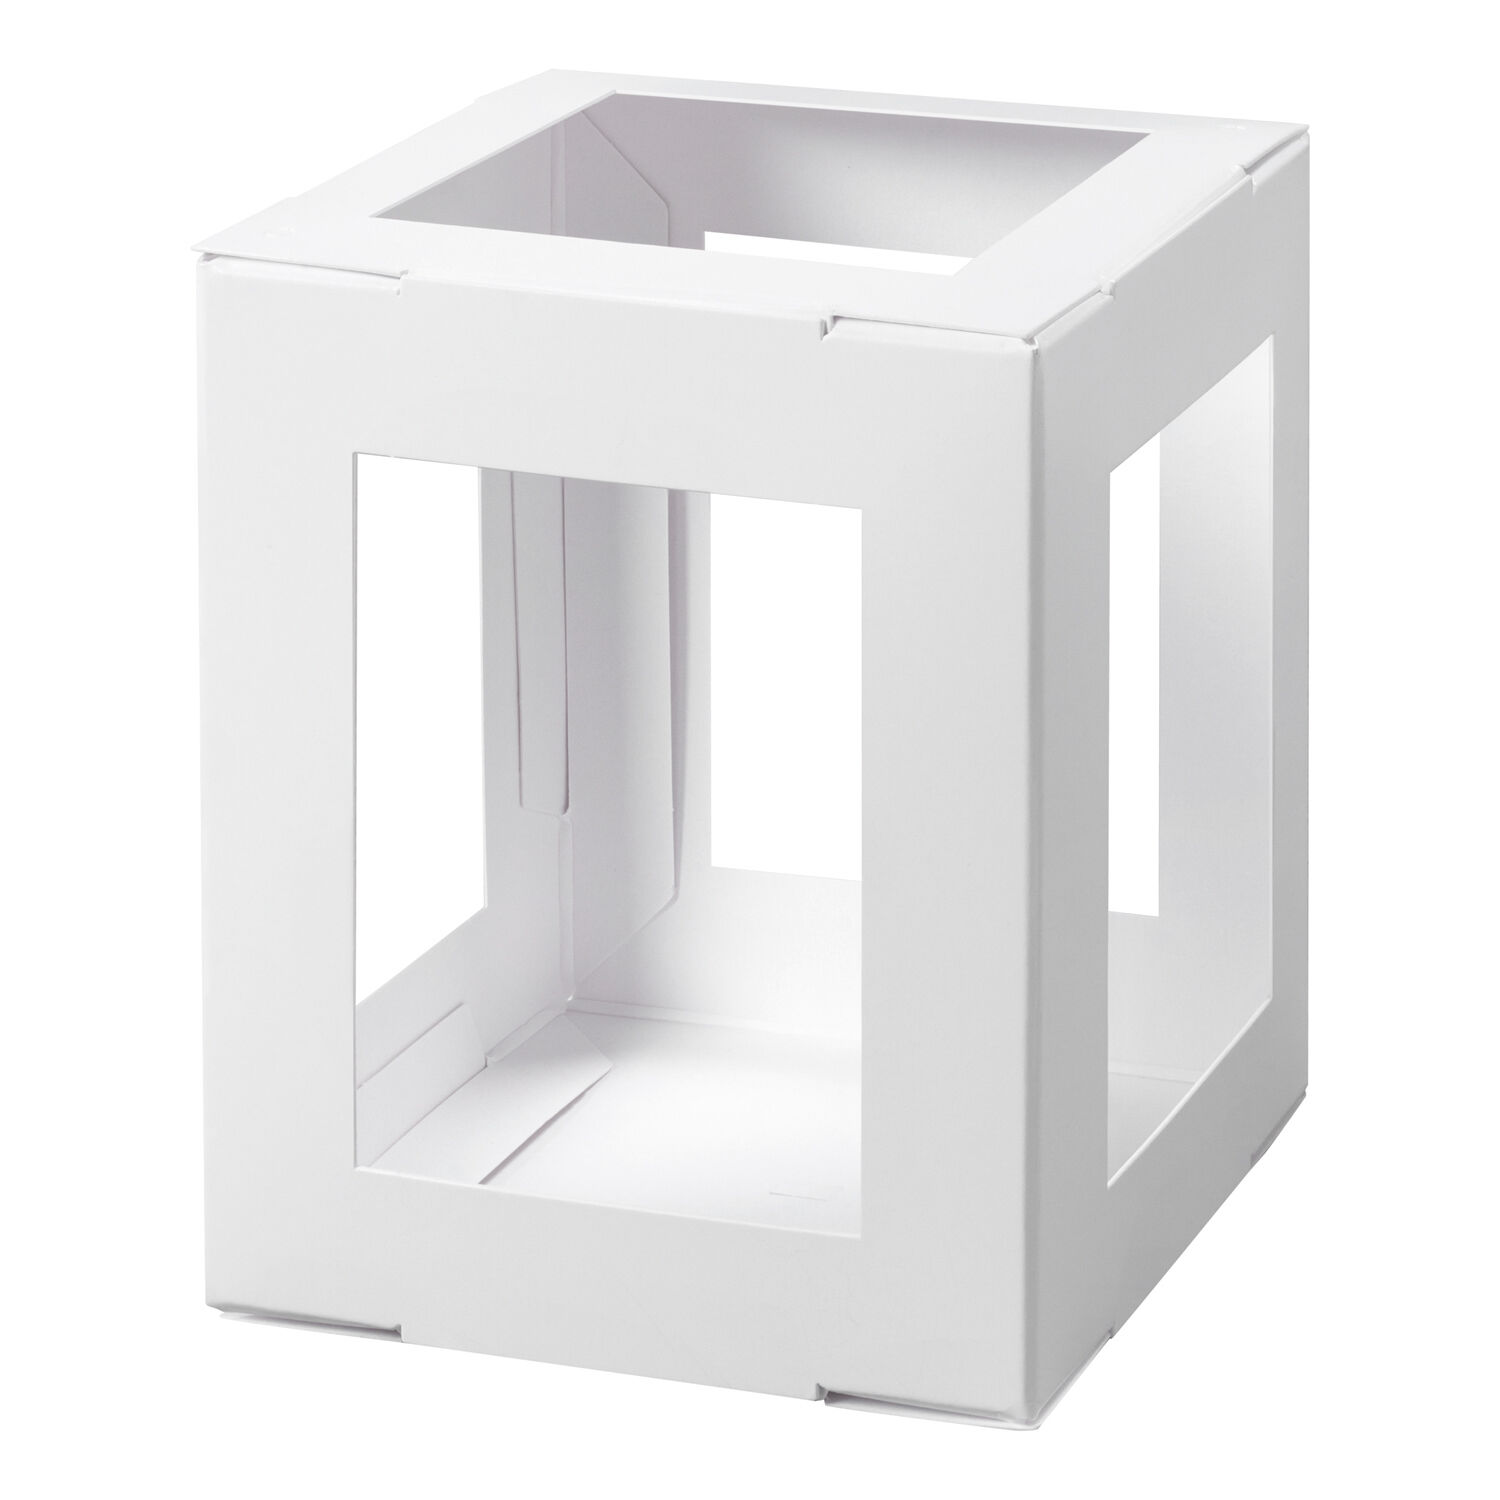 NEU Minilaternen Rohling zum Stecken, 400g/m², 10x10x12cm, 1 Stück, Weiß